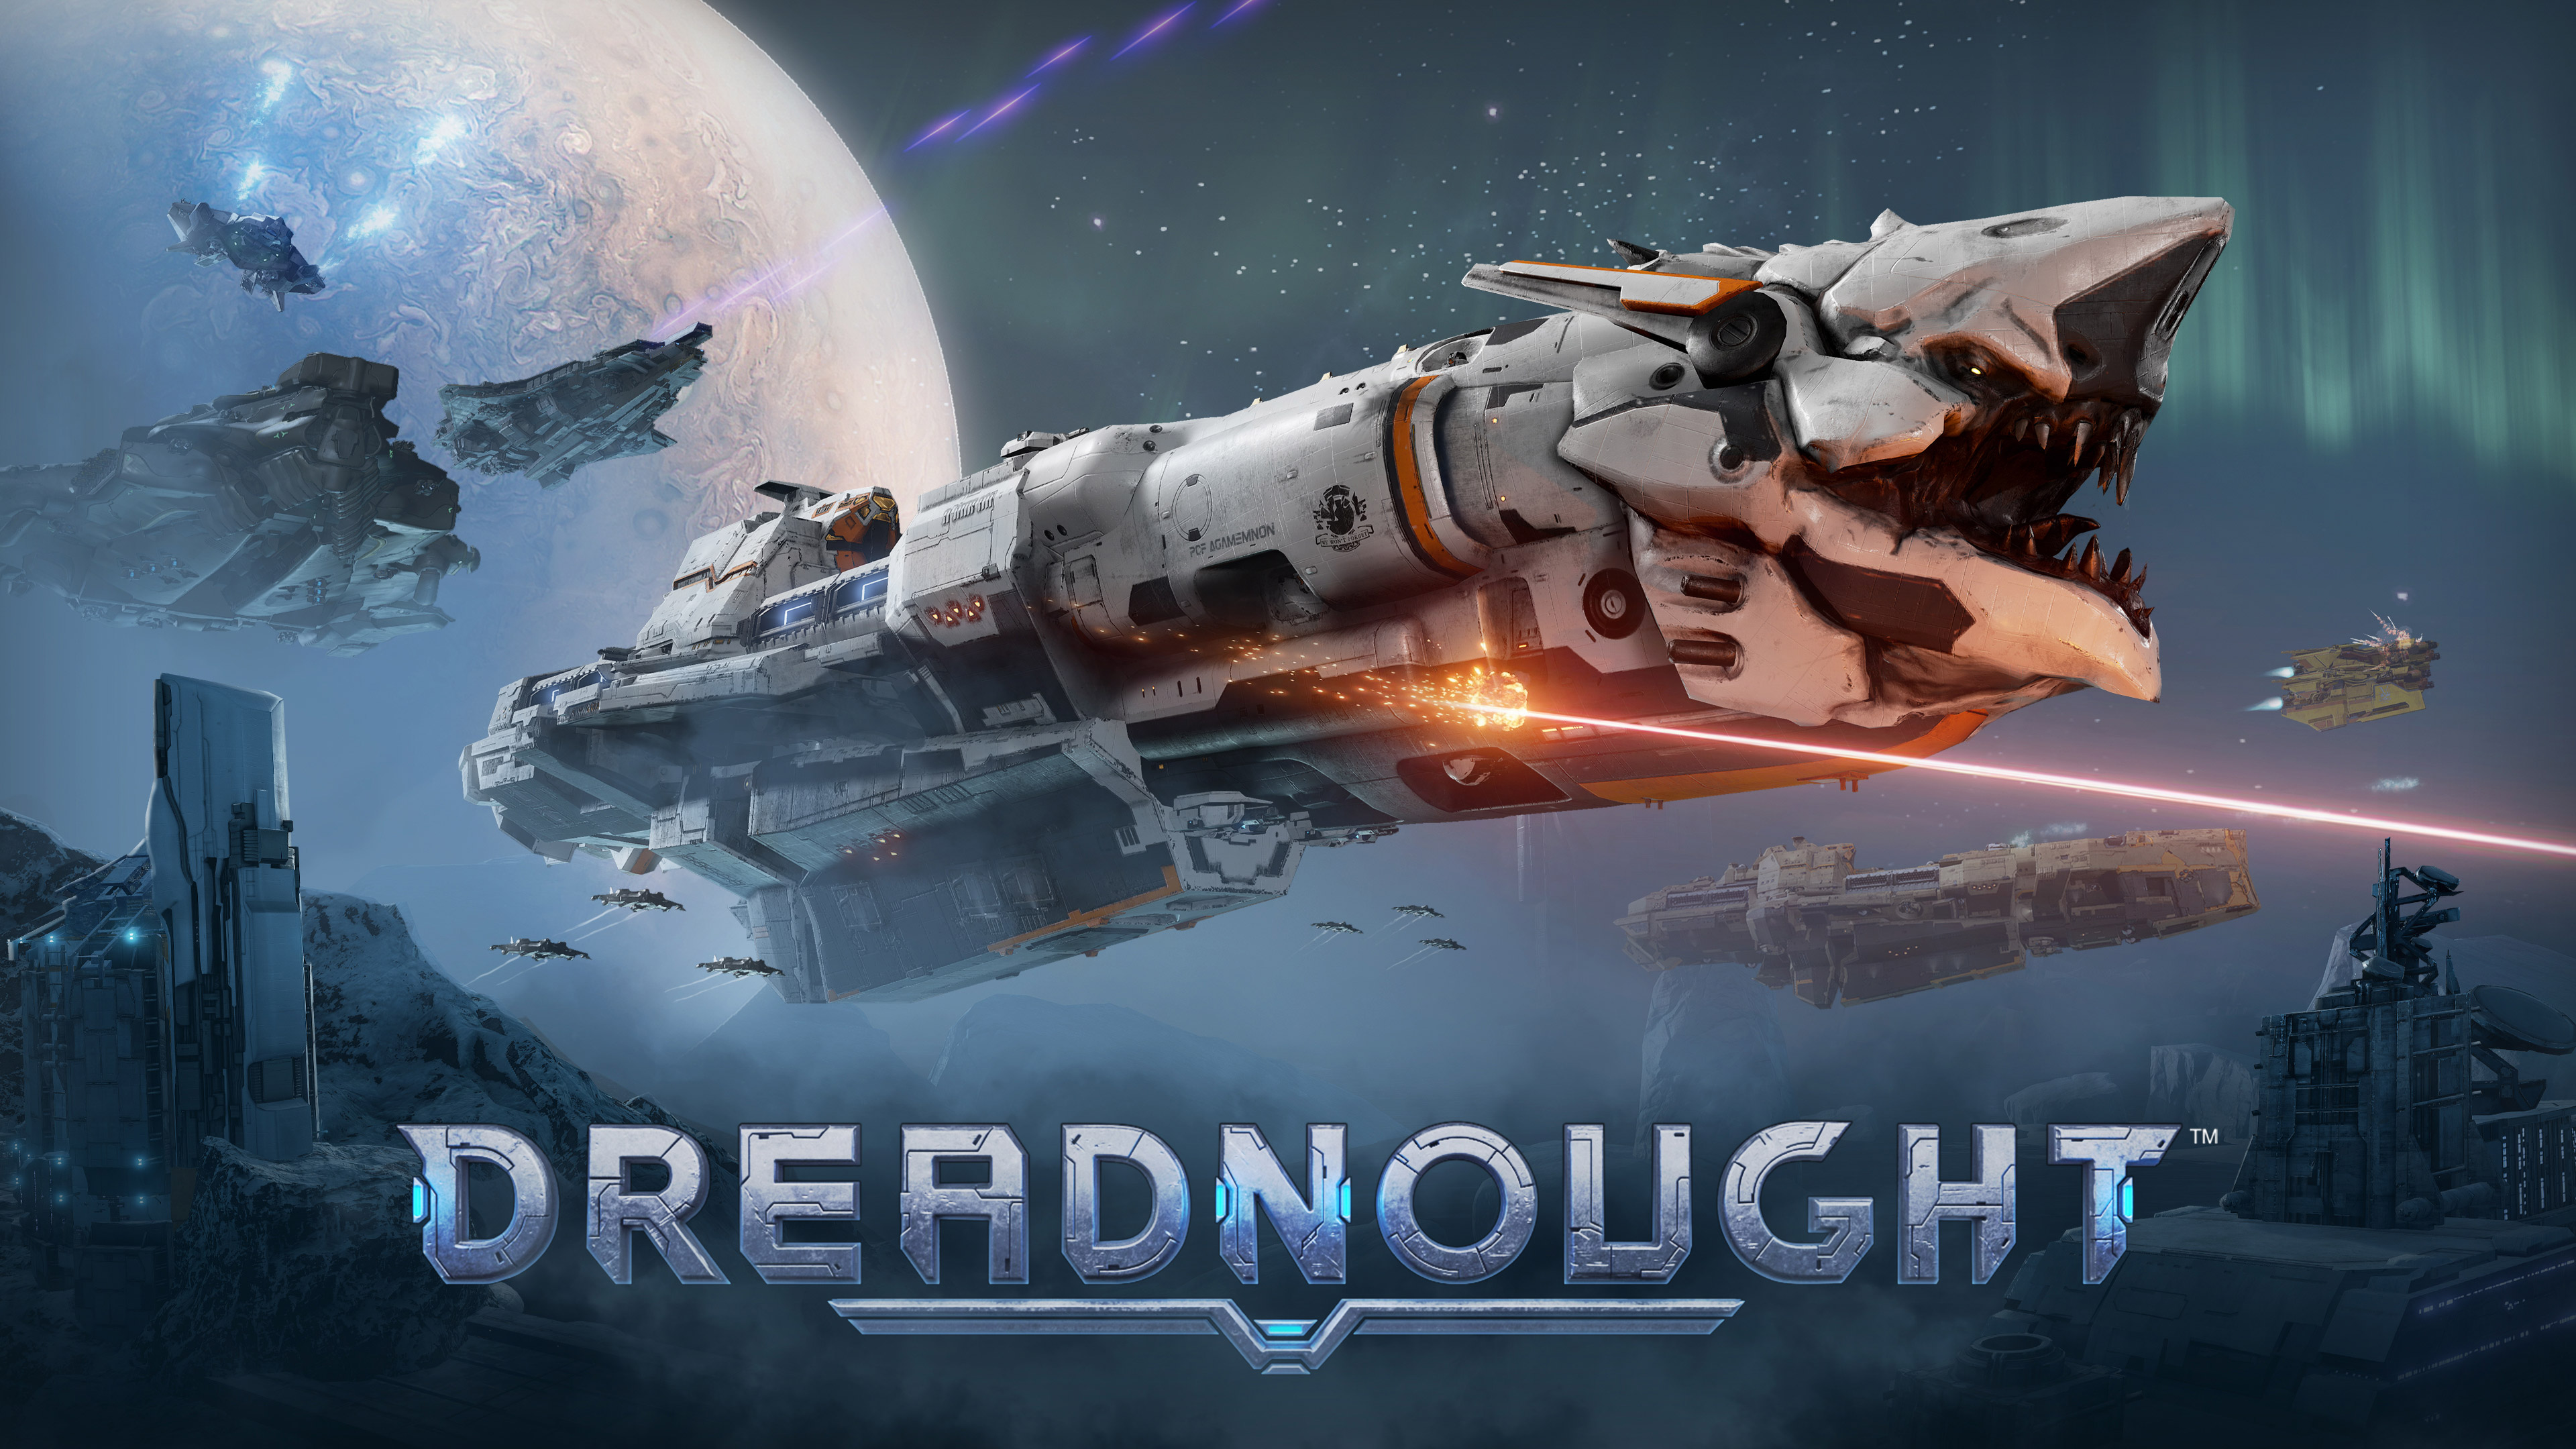 Dreadnought Steam , HD Wallpaper & Backgrounds